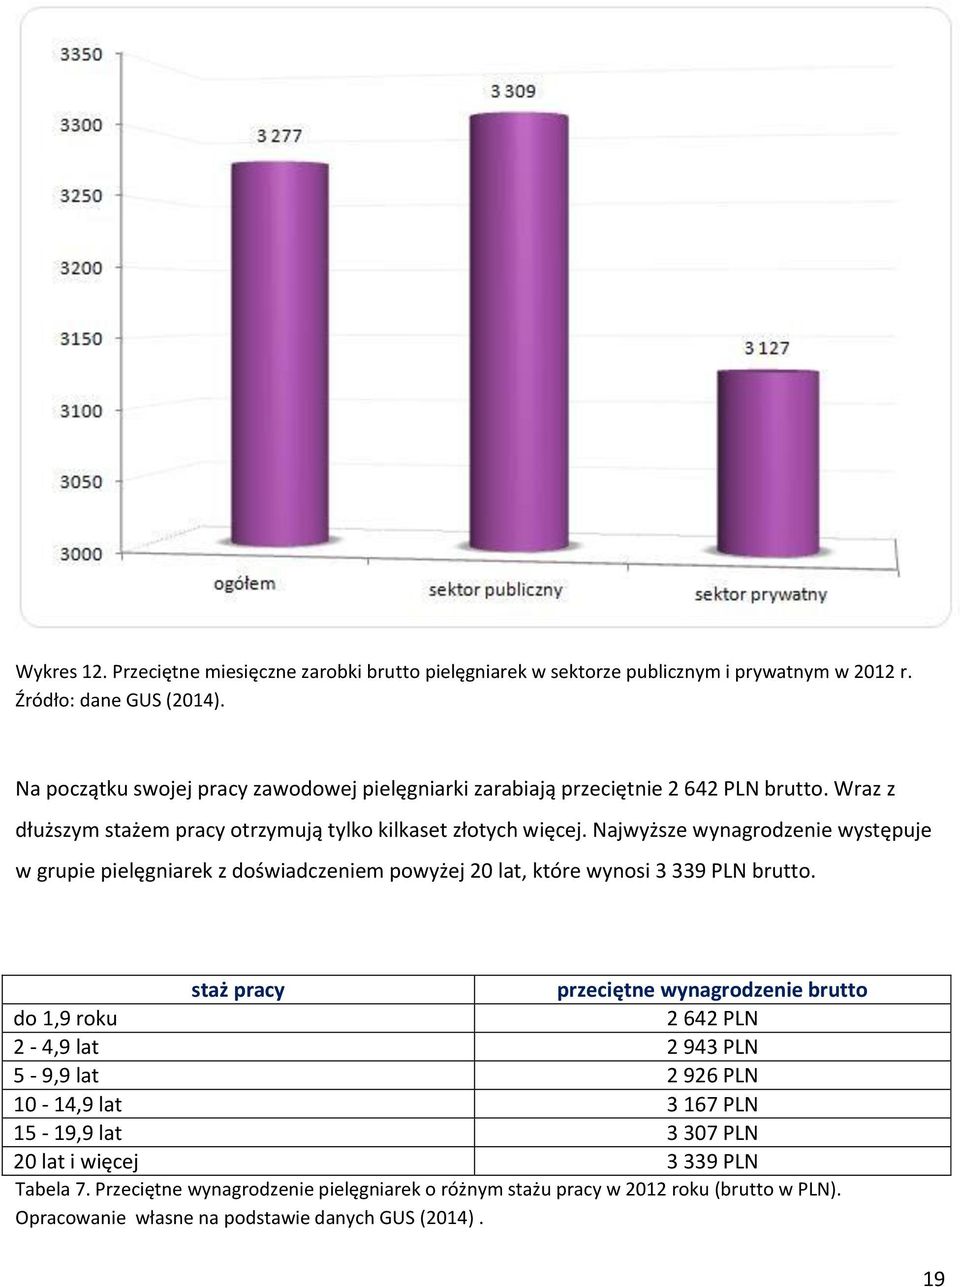 Najwyższe wynagrodzenie występuje w grupie pielęgniarek z doświadczeniem powyżej 20 lat, które wynosi 3 339 PLN brutto.